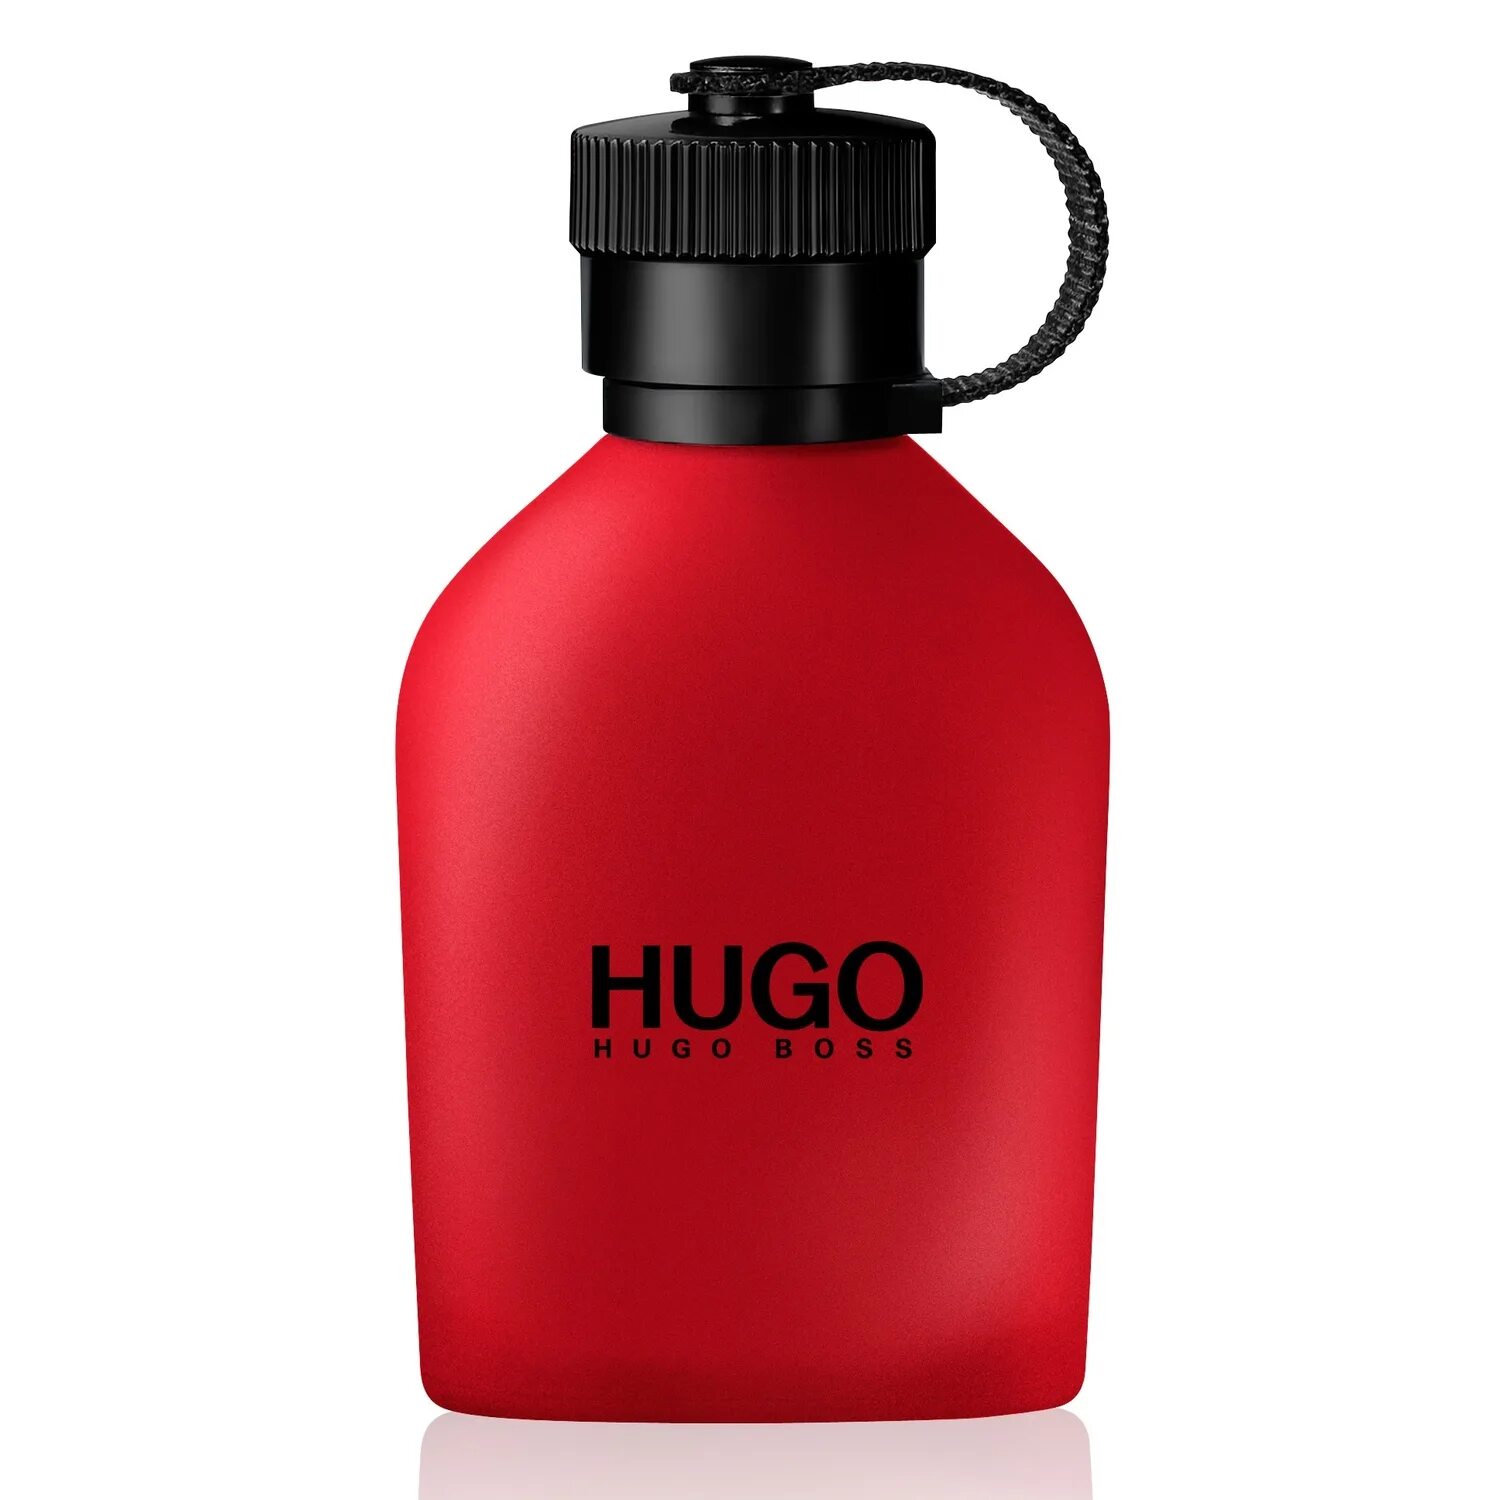 Hugo Boss Hugo man EDT 125ml. Hugo Boss Red men 100ml. Hugo Boss духи Red. Туалетная вода Hugo Boss Red (150ml) муж.. Ml hugo